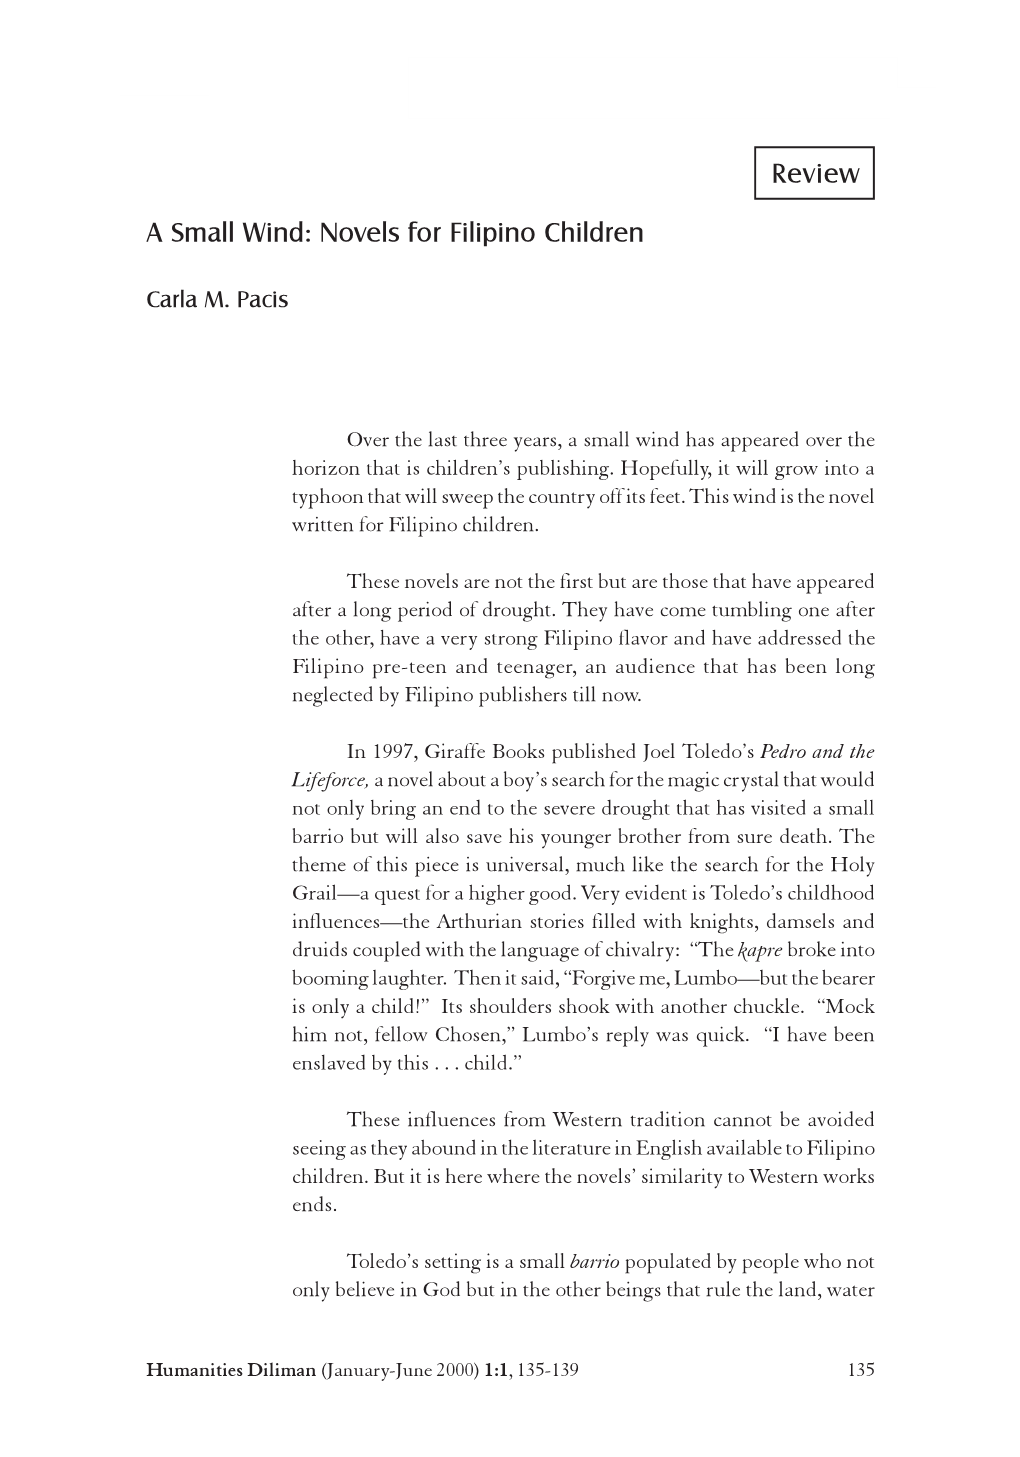 Novels for Filipino Children Review